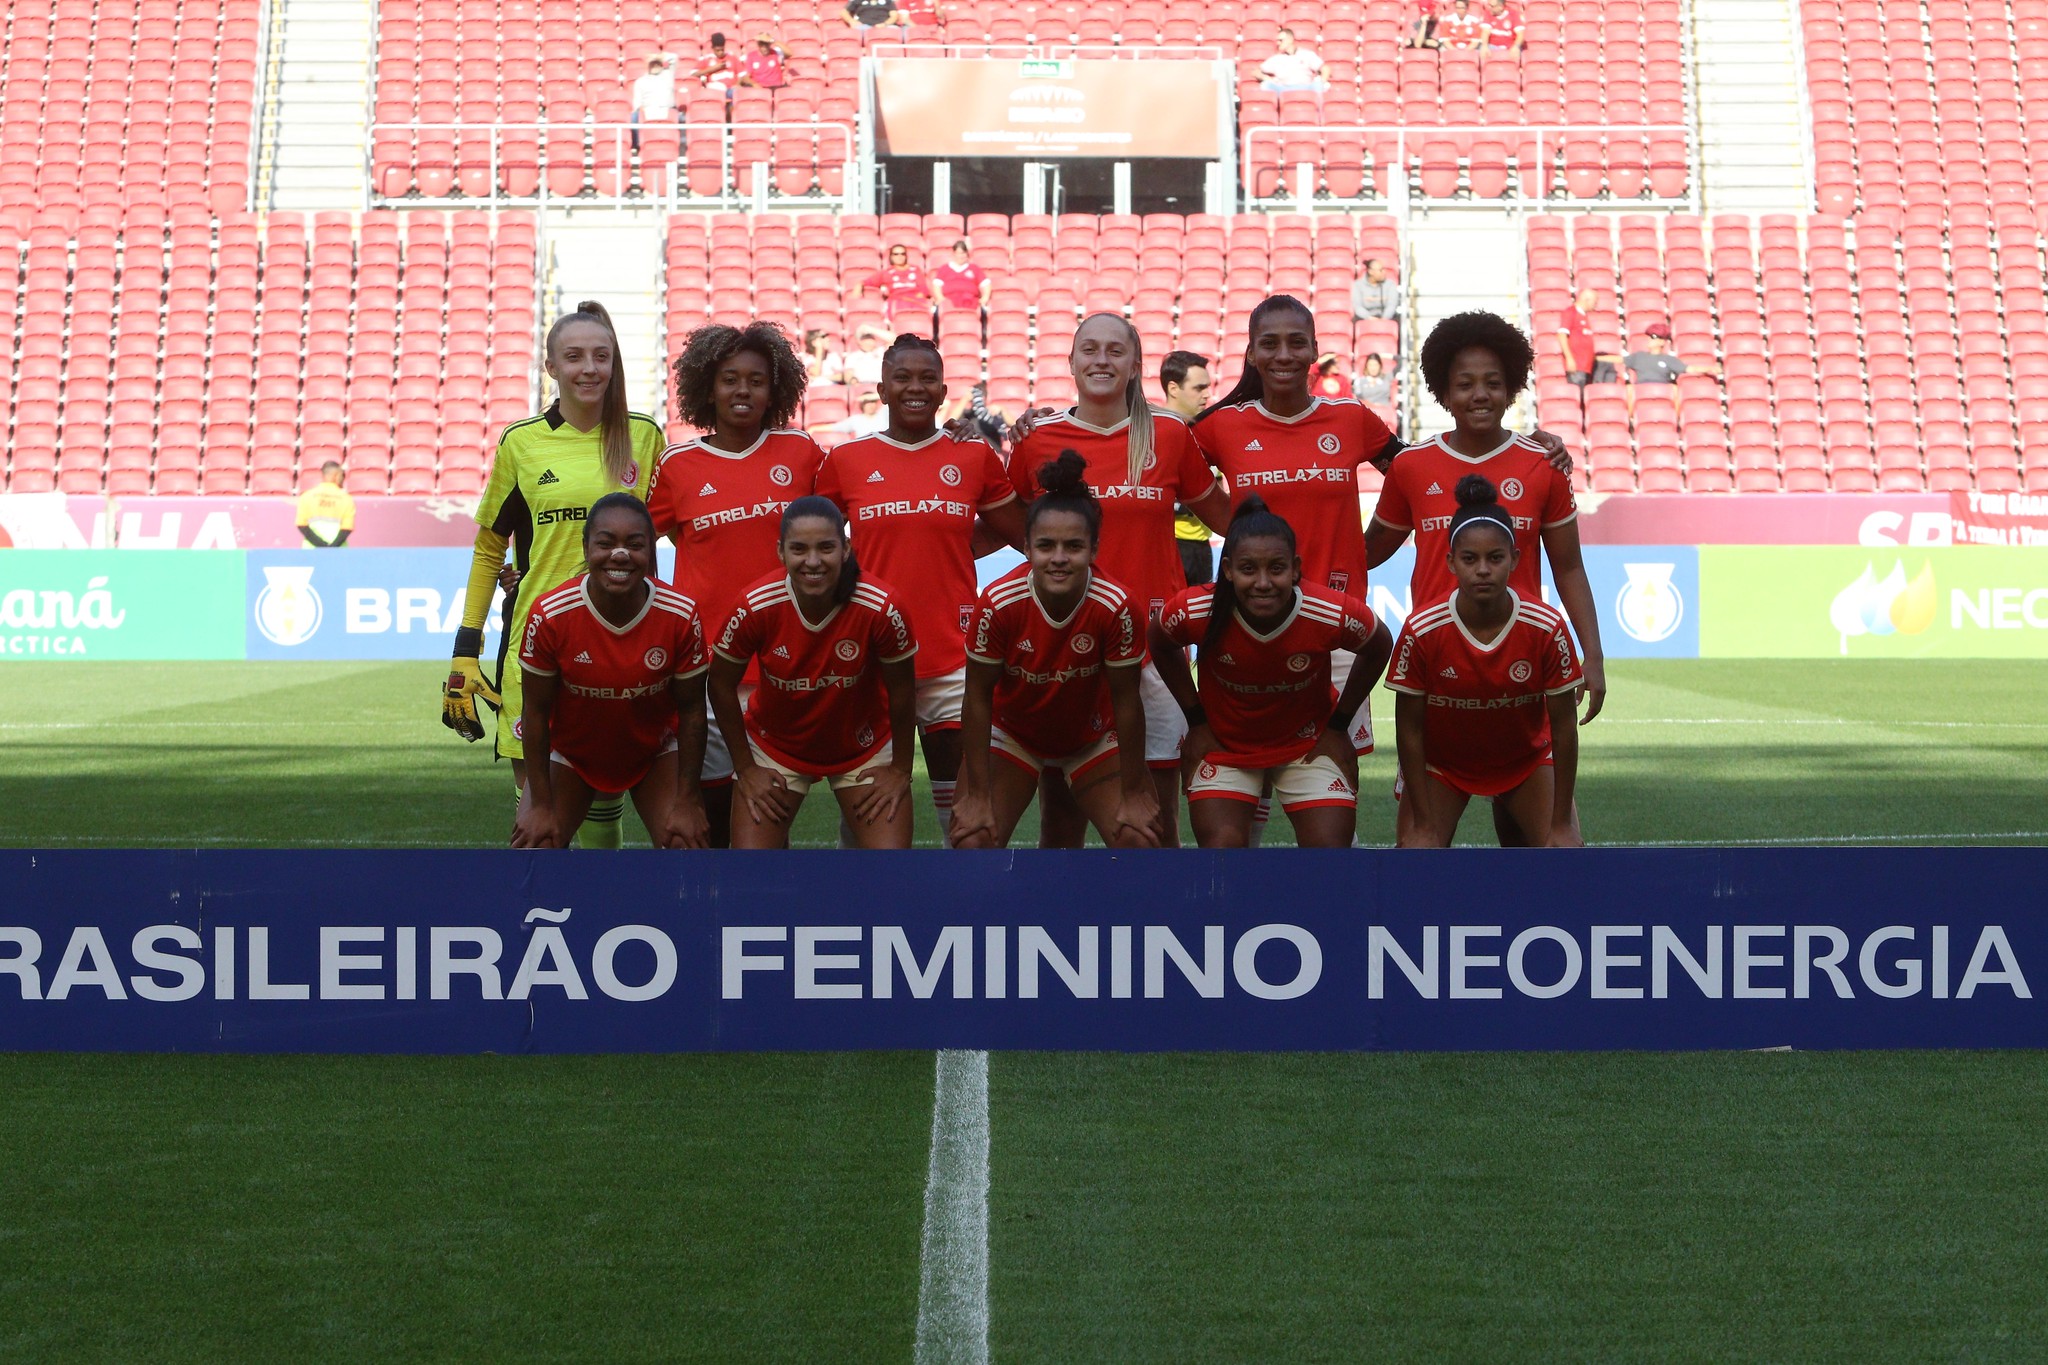 Como o Inter quer desafiar a hegemonia paulista no Brasileirão feminino